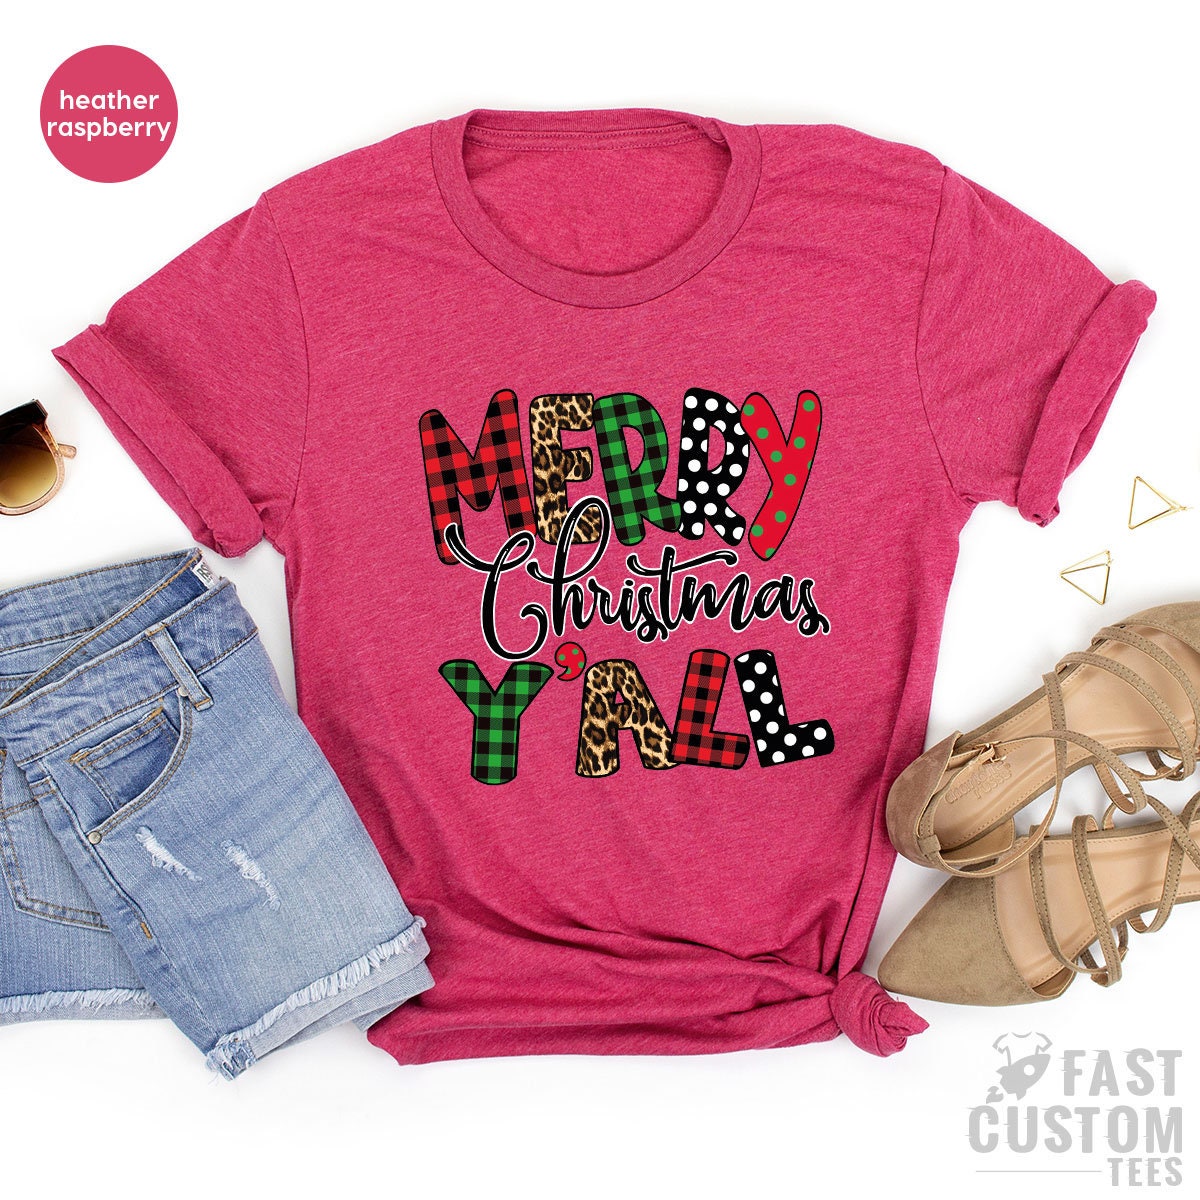 Christmas Tree T-shirt, Christmas Y'all T-Shirt, Women Christmas Gift, Merry Shirt, Cute Christmas Tee, Family Christmas Shirt, Merry Tee - Fastdeliverytees.com